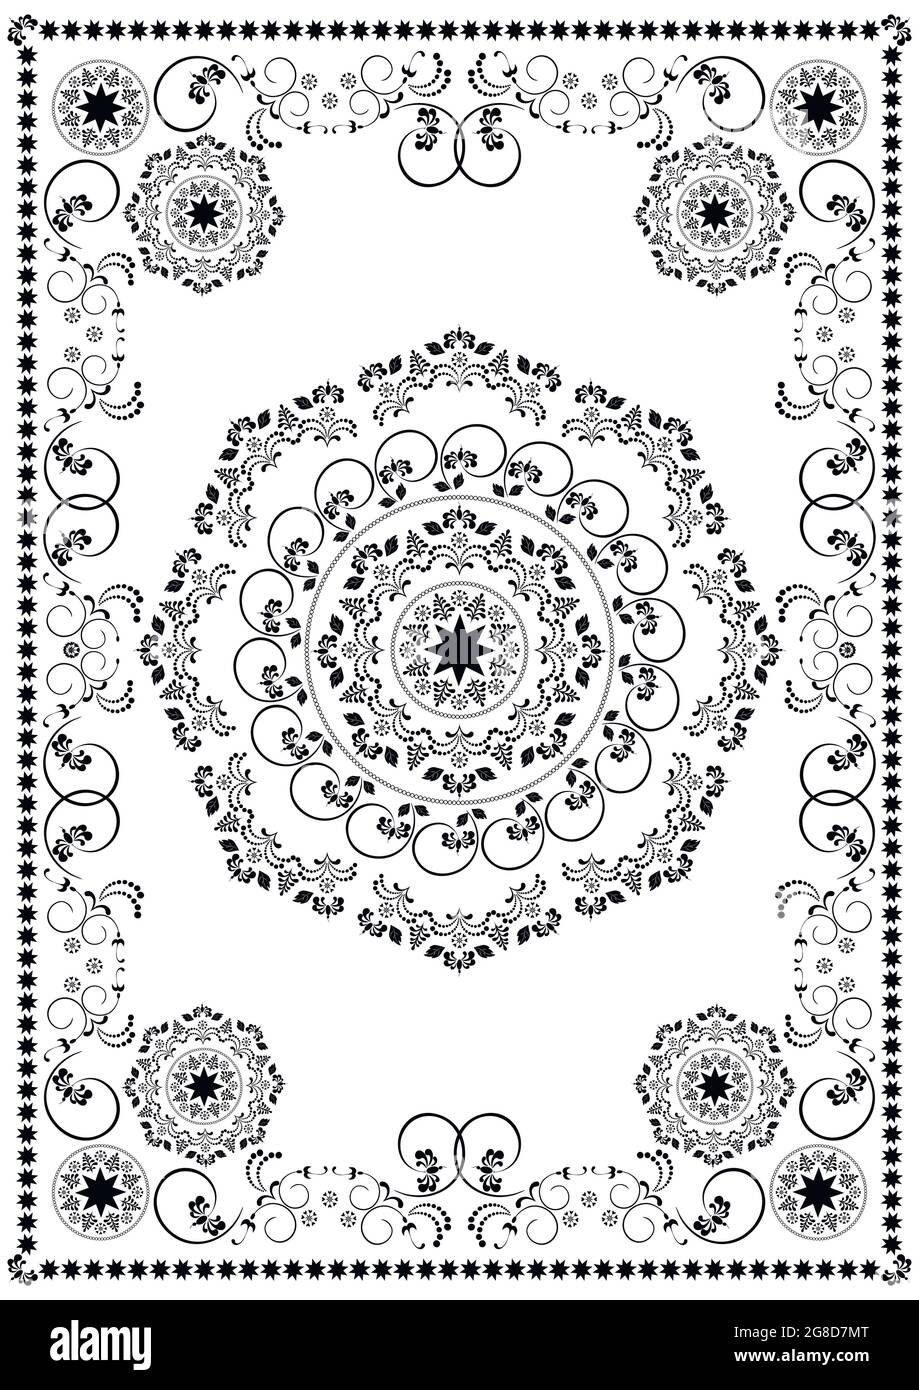 Vintage-Rahmen mit floralem Kalligrafie-Muster im orientalischen Stil auf weißem Hintergrund Stock Vektor